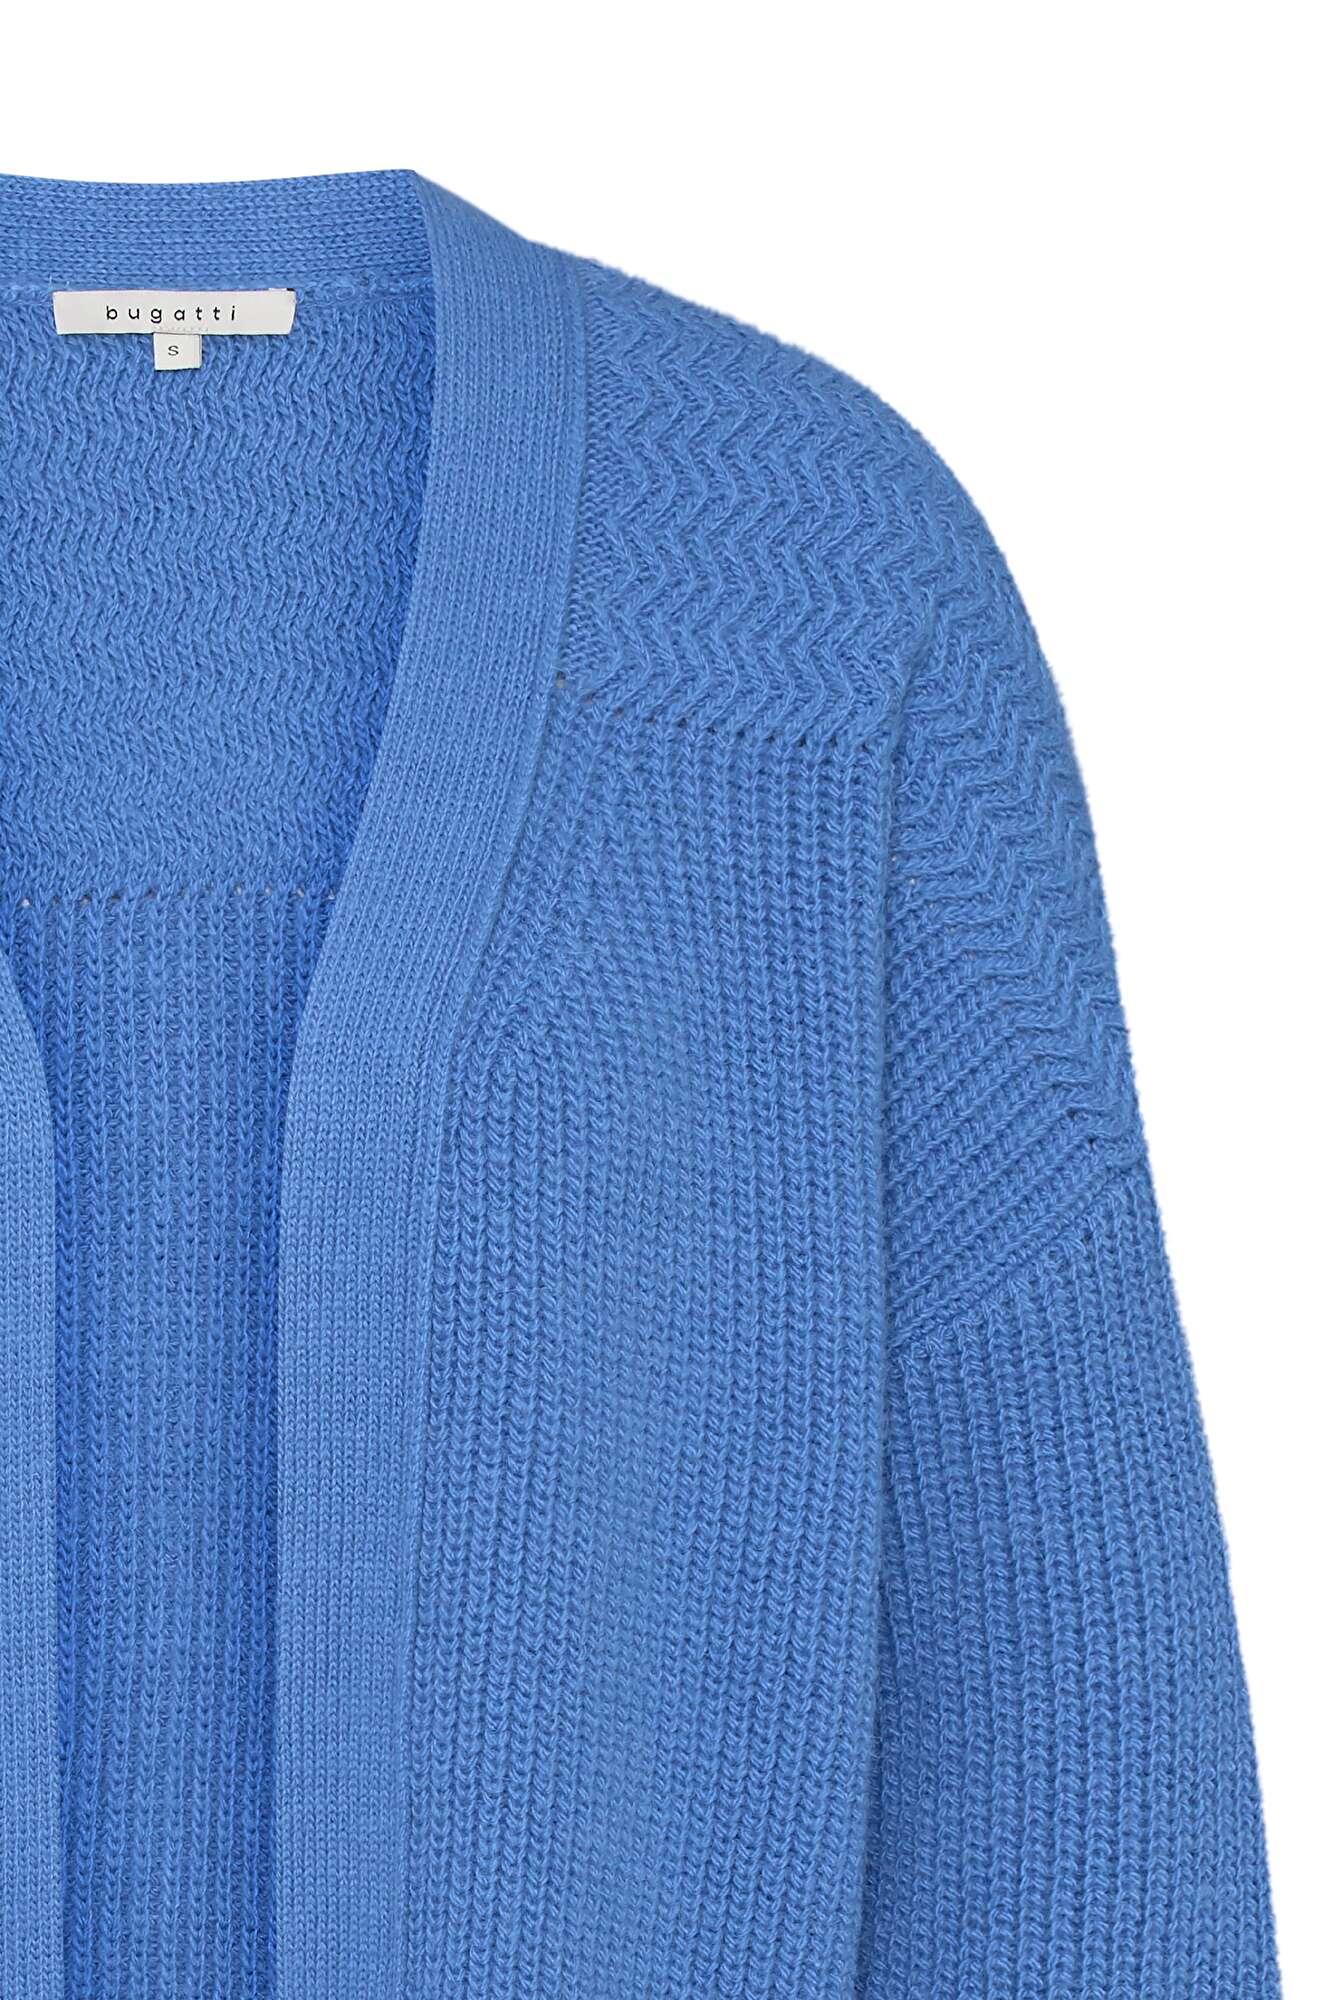 aus blau | Lässige in bugatti hochwertiger Strickjacke Alpaka-Wollmischung